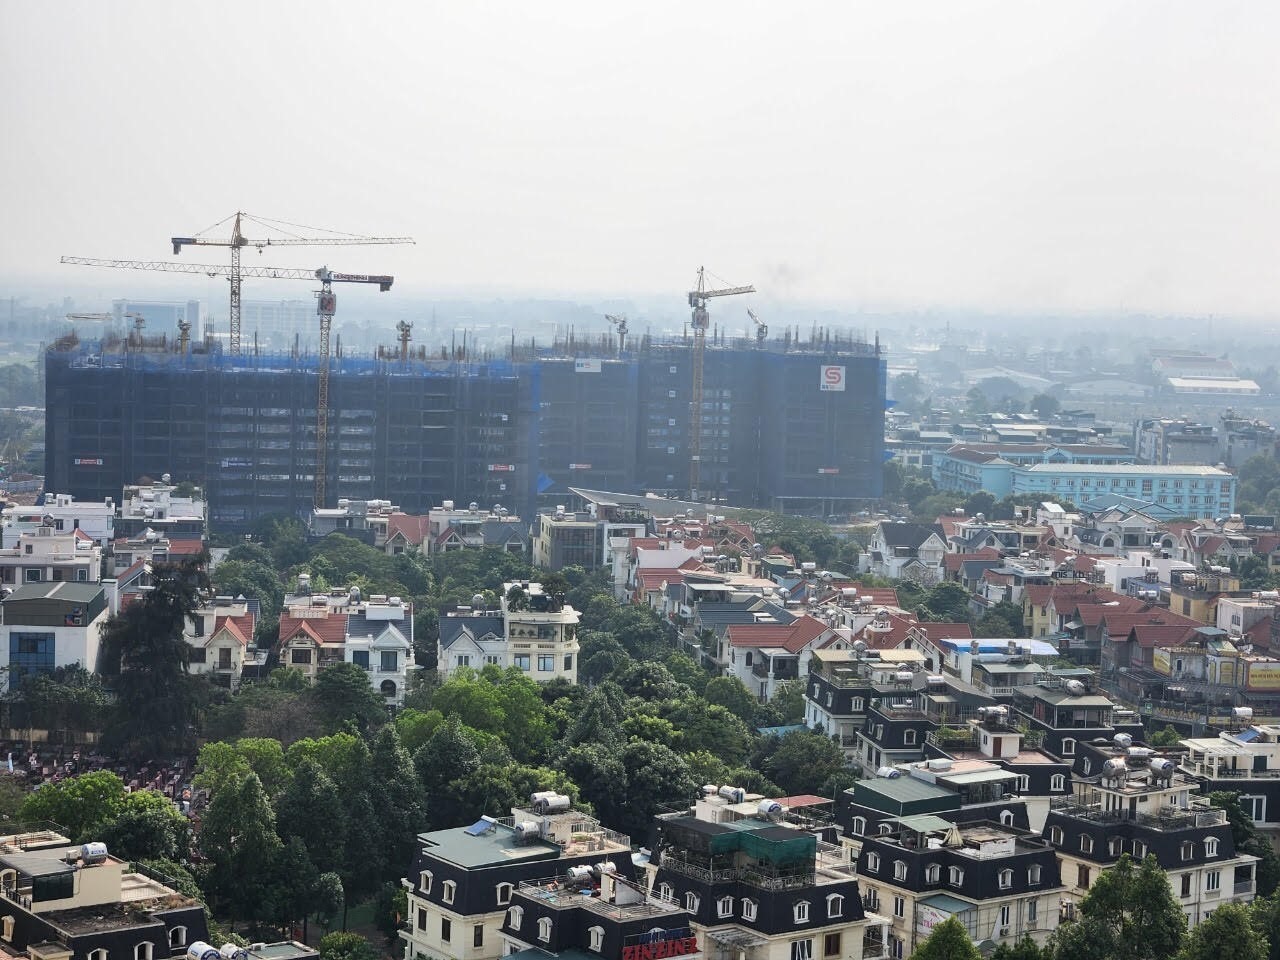 Dự án Tổ hợp thương mại và căn hộ Hà Nội Melody Residences thuộc Khu đô thị Tây Nam Linh Đàm đang xây dựng. Ảnh: Cao Nguyên.